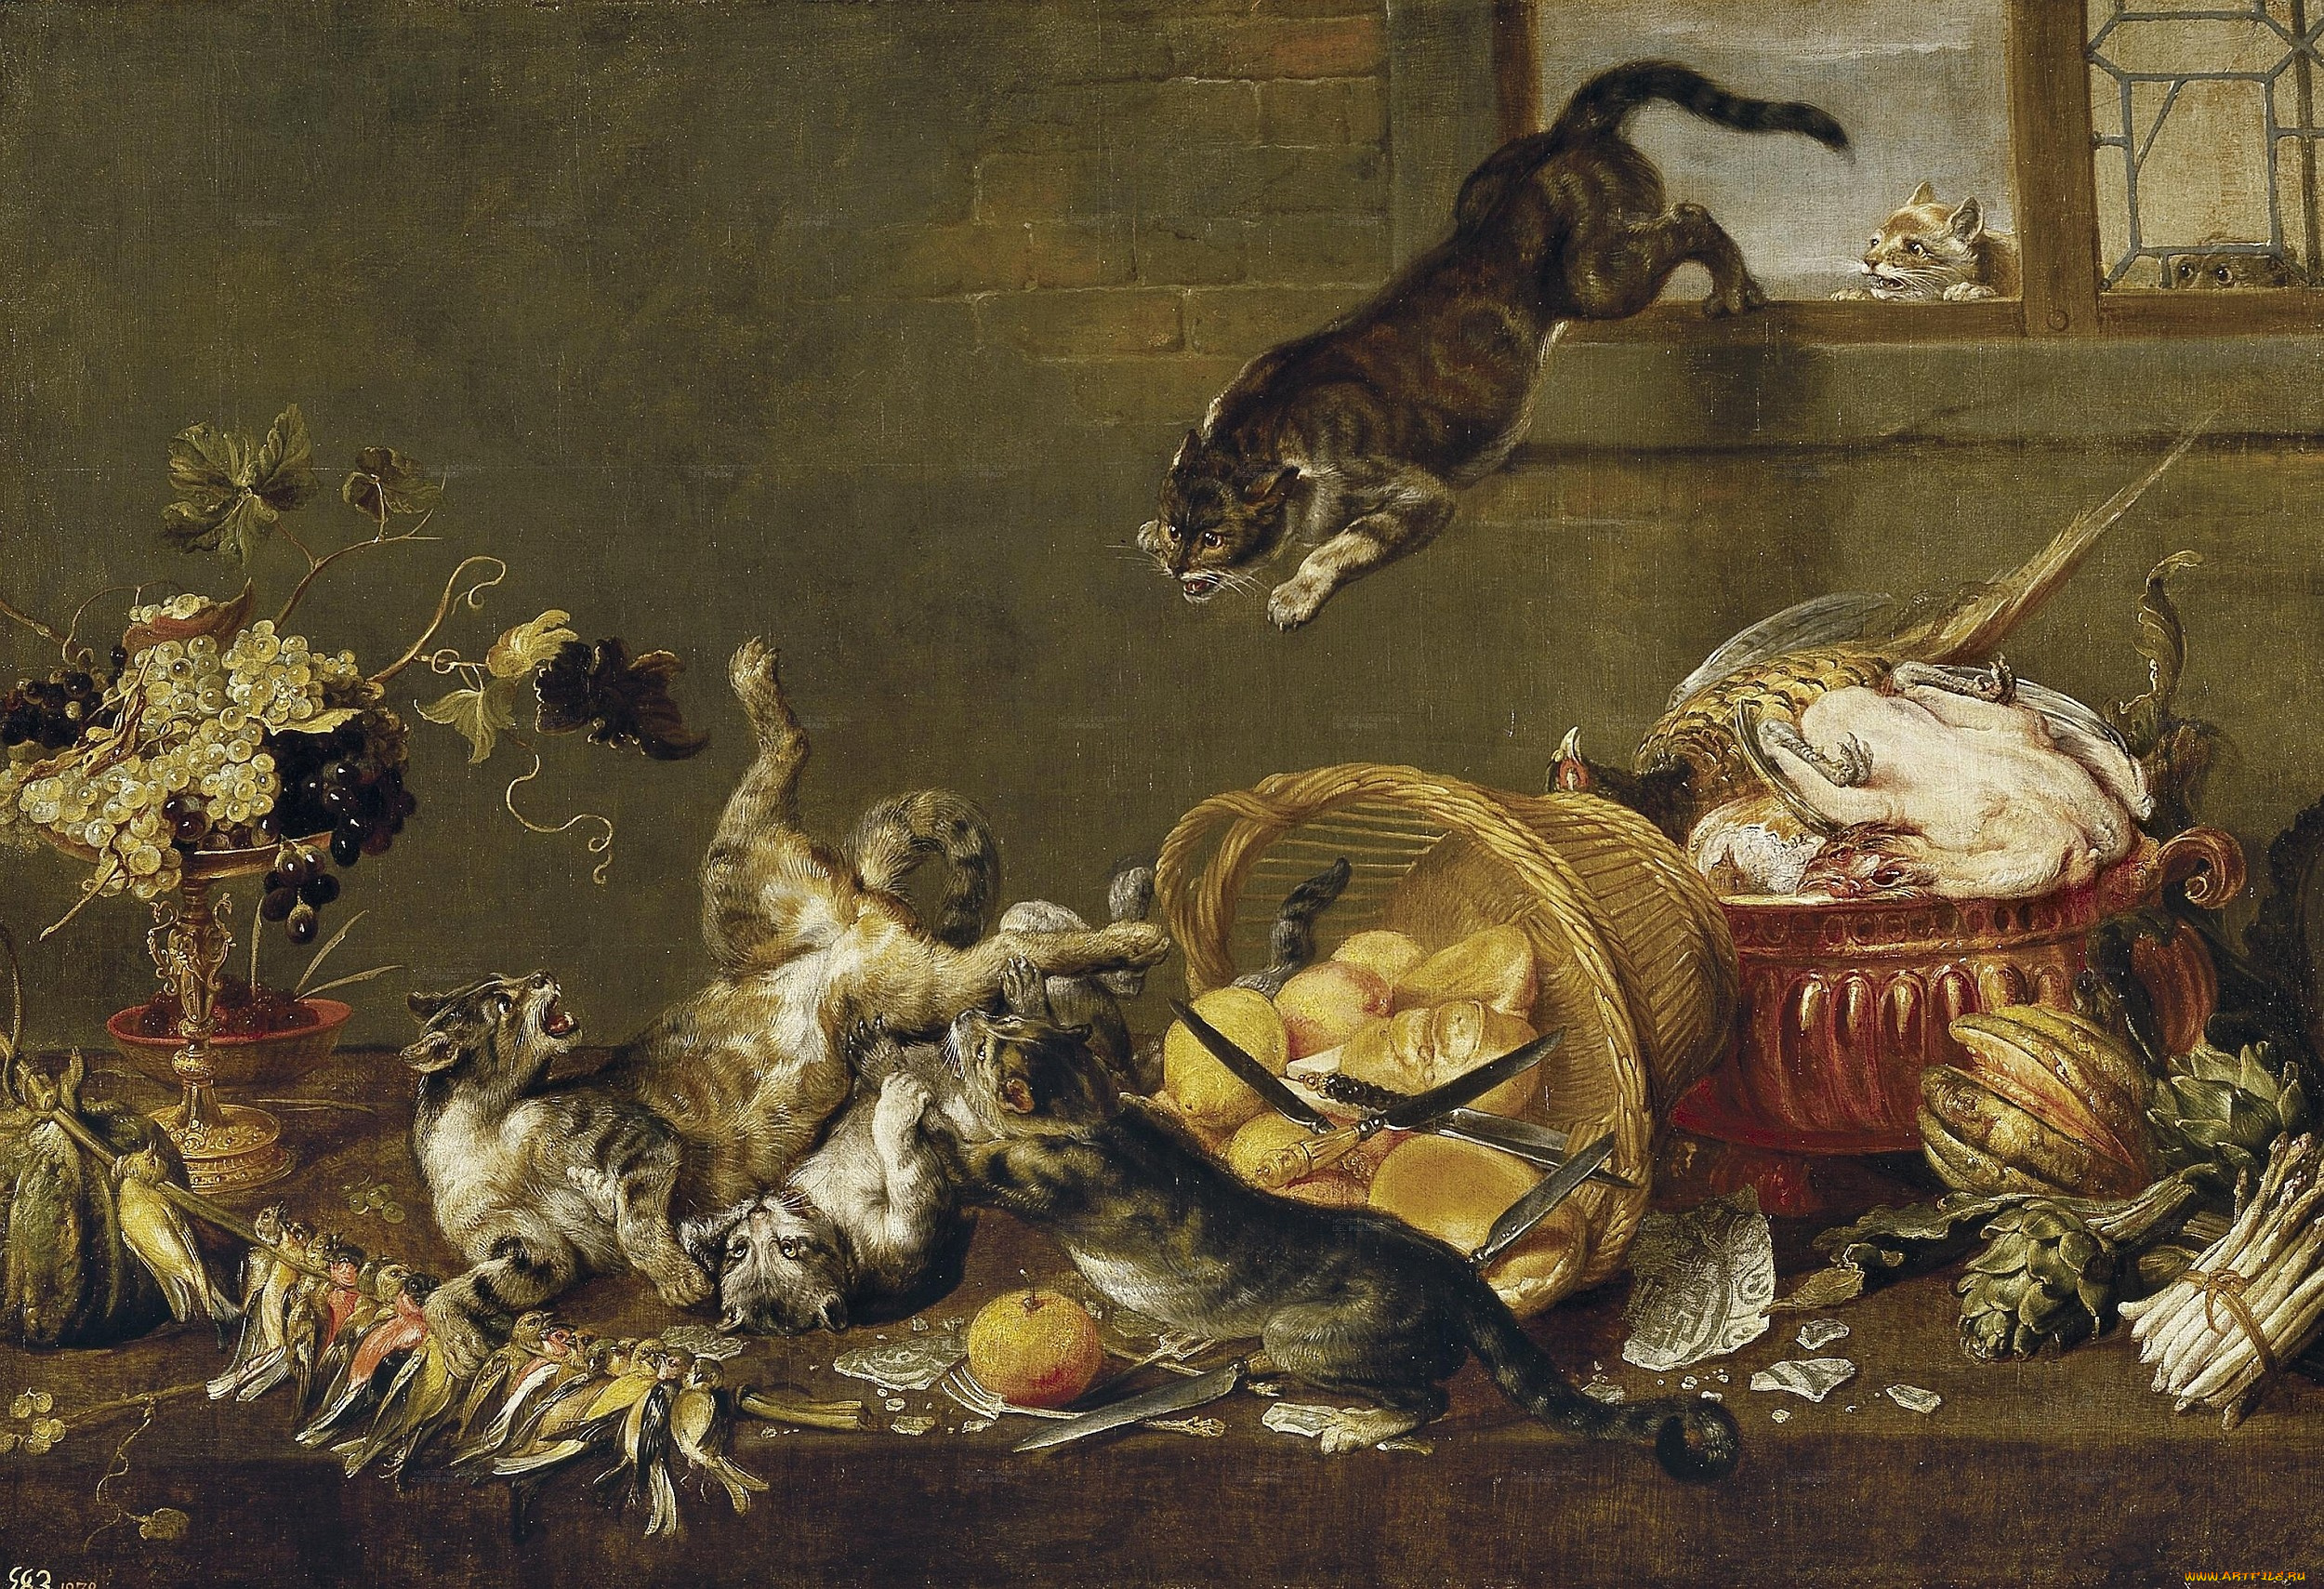 фламандская, живопись, xvii, века, рисованные, ножи, хлеб, мясо, фрукты, коты, драка, окно